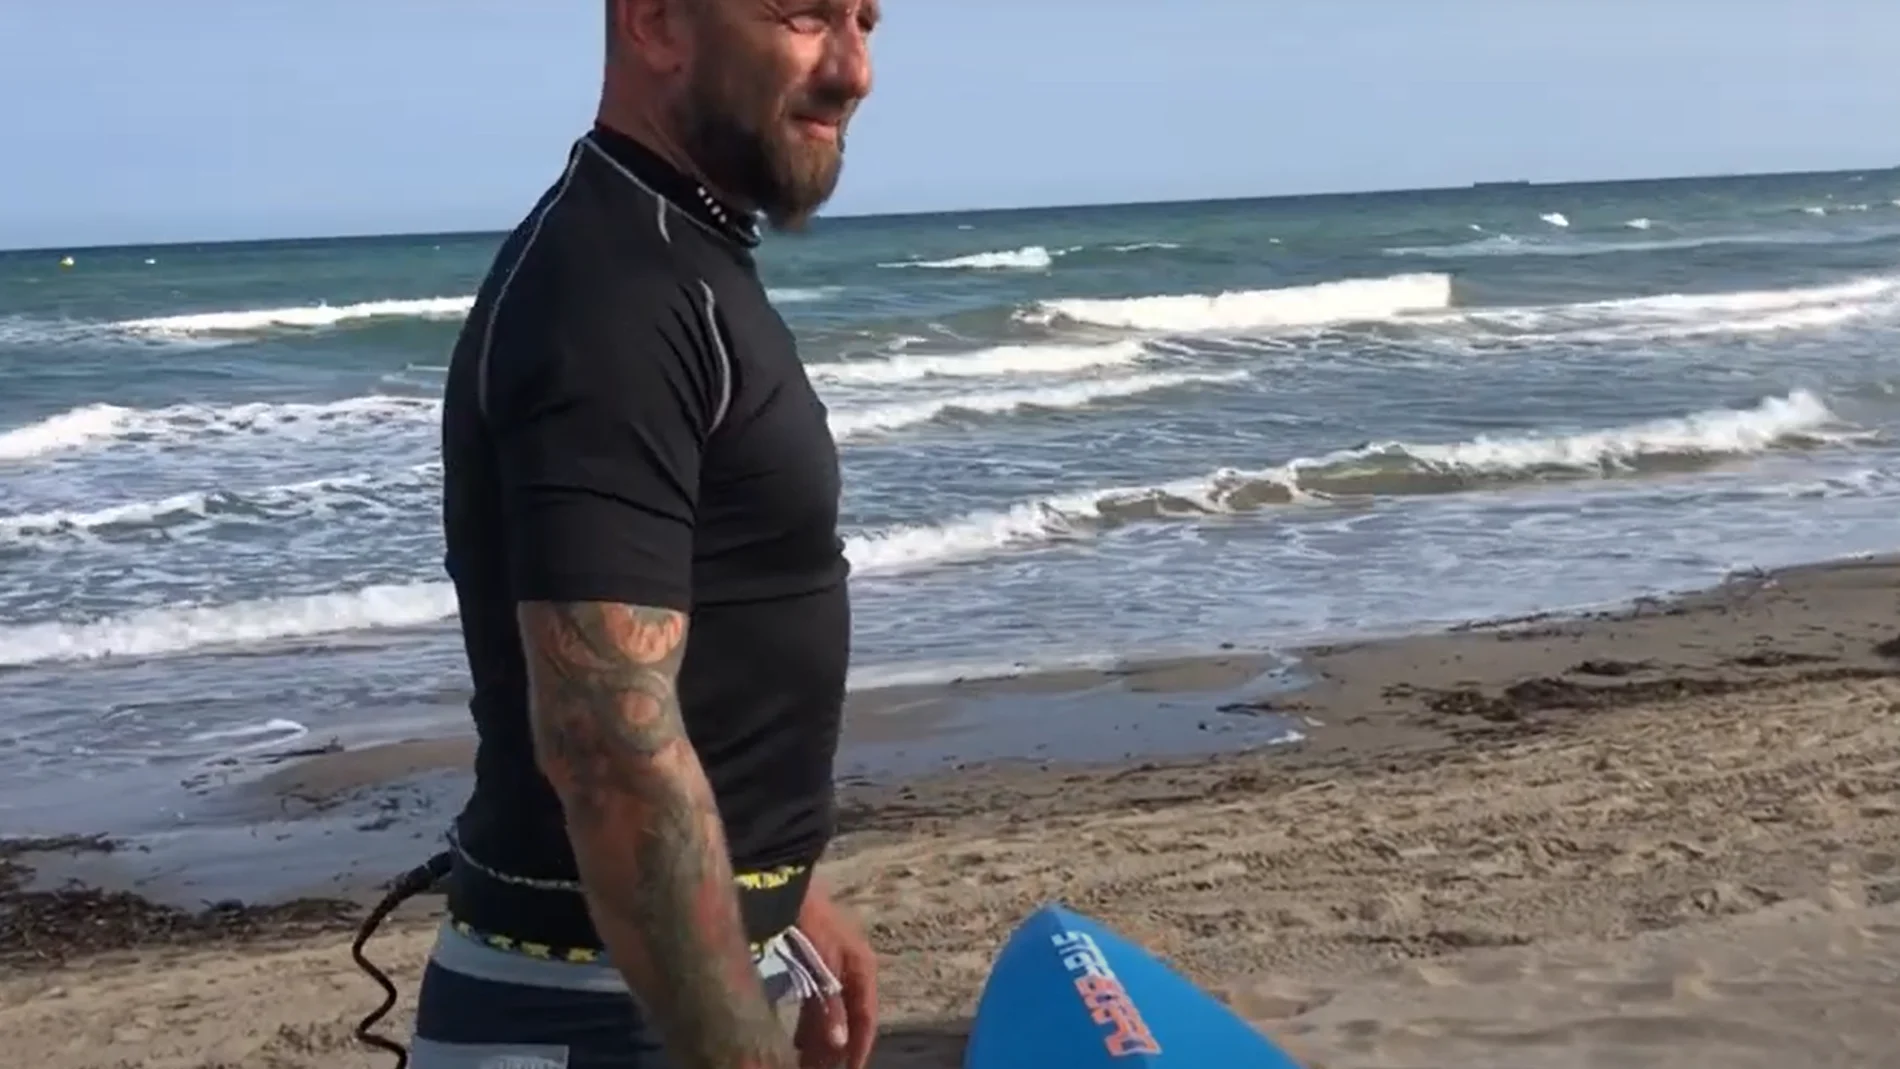 Enrico Grossi recorre 400 km por el Mediterráneo montado en su tabla de surf para cuidar el mar